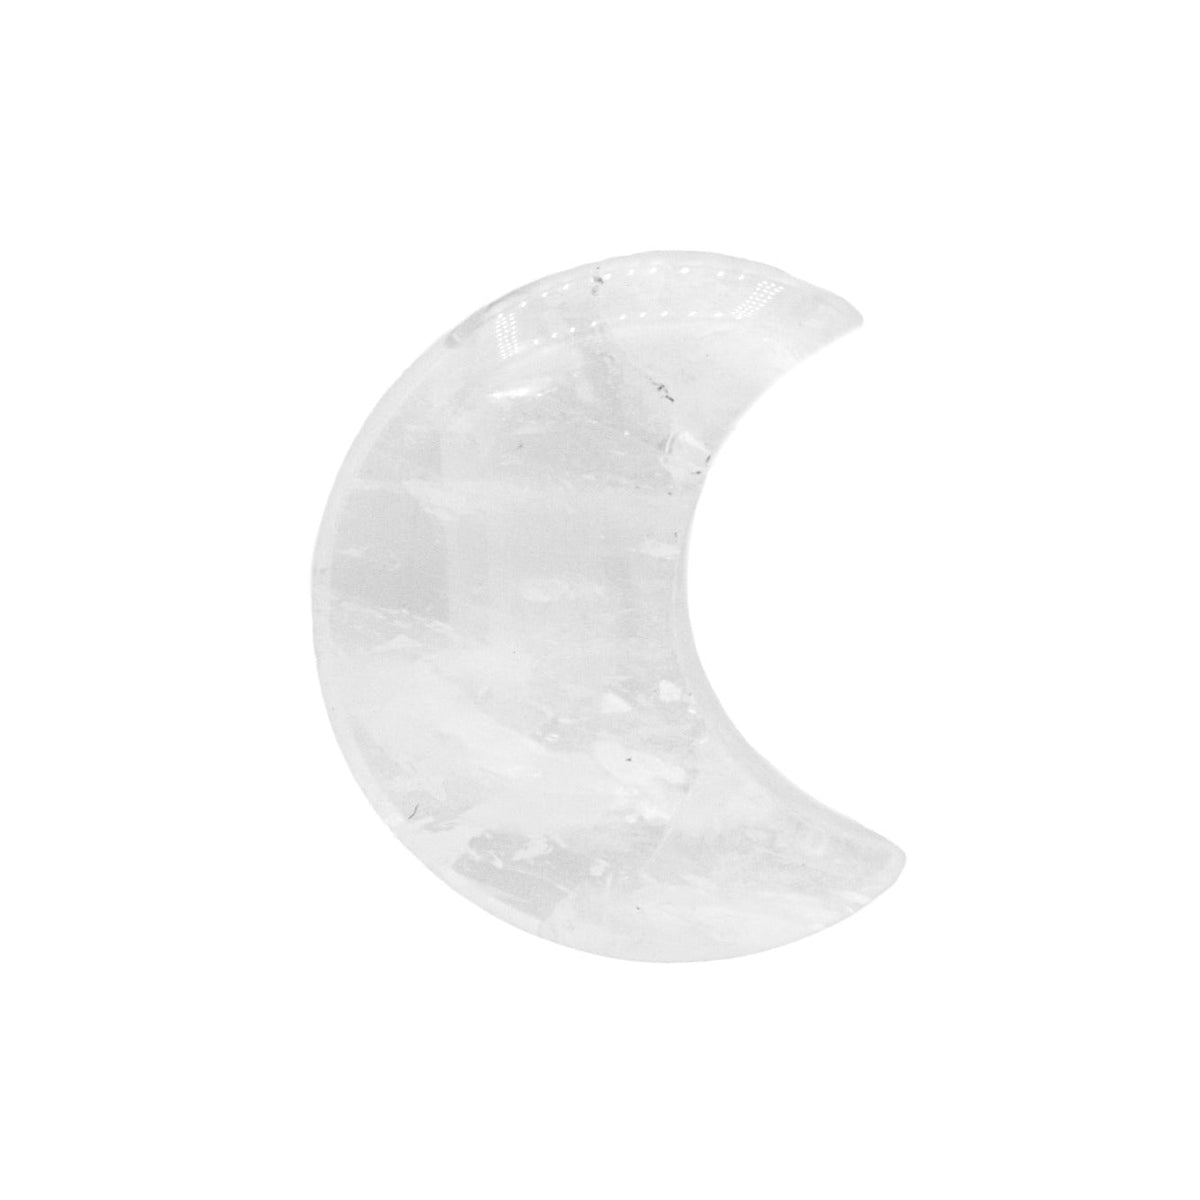 Moon - Clear Quartz